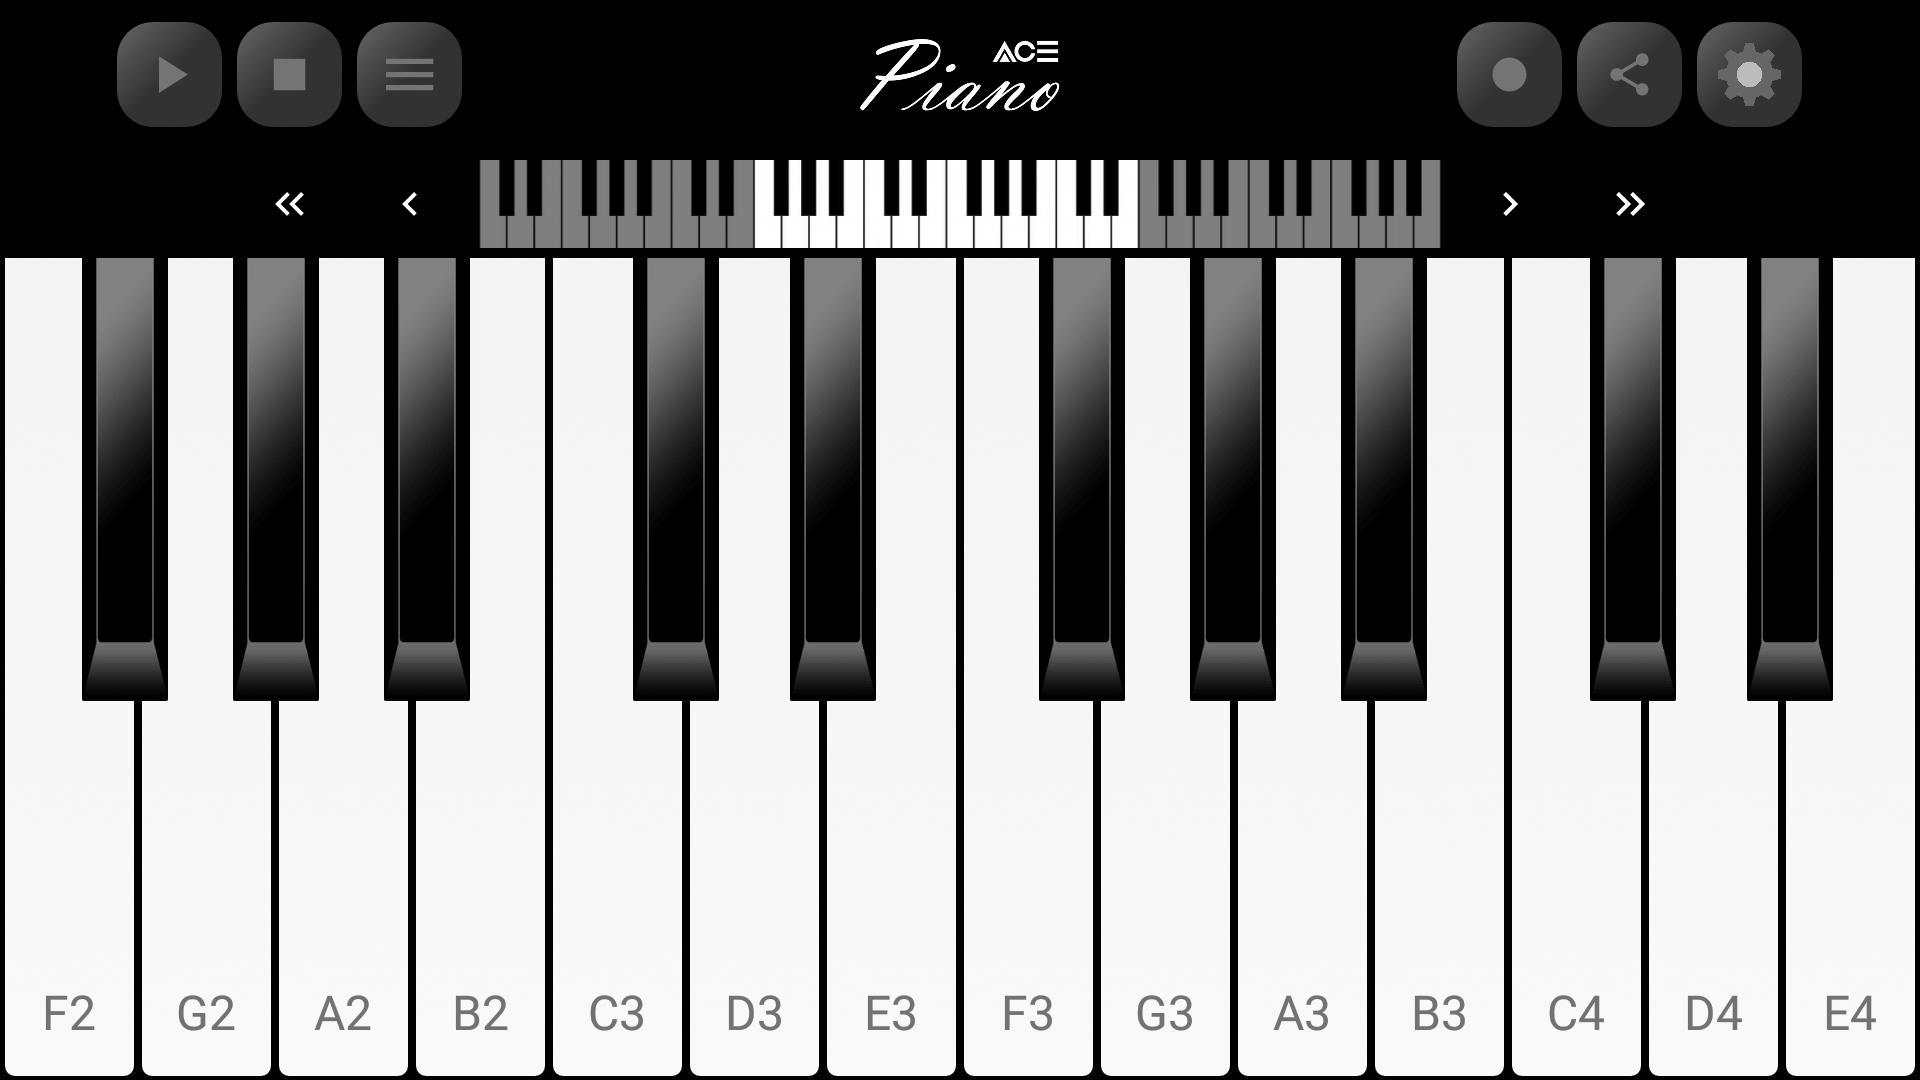 Пианино где можно играть. Клавиатура фортепиано с цифрами. C4 на пианино. F2 где на пианино.